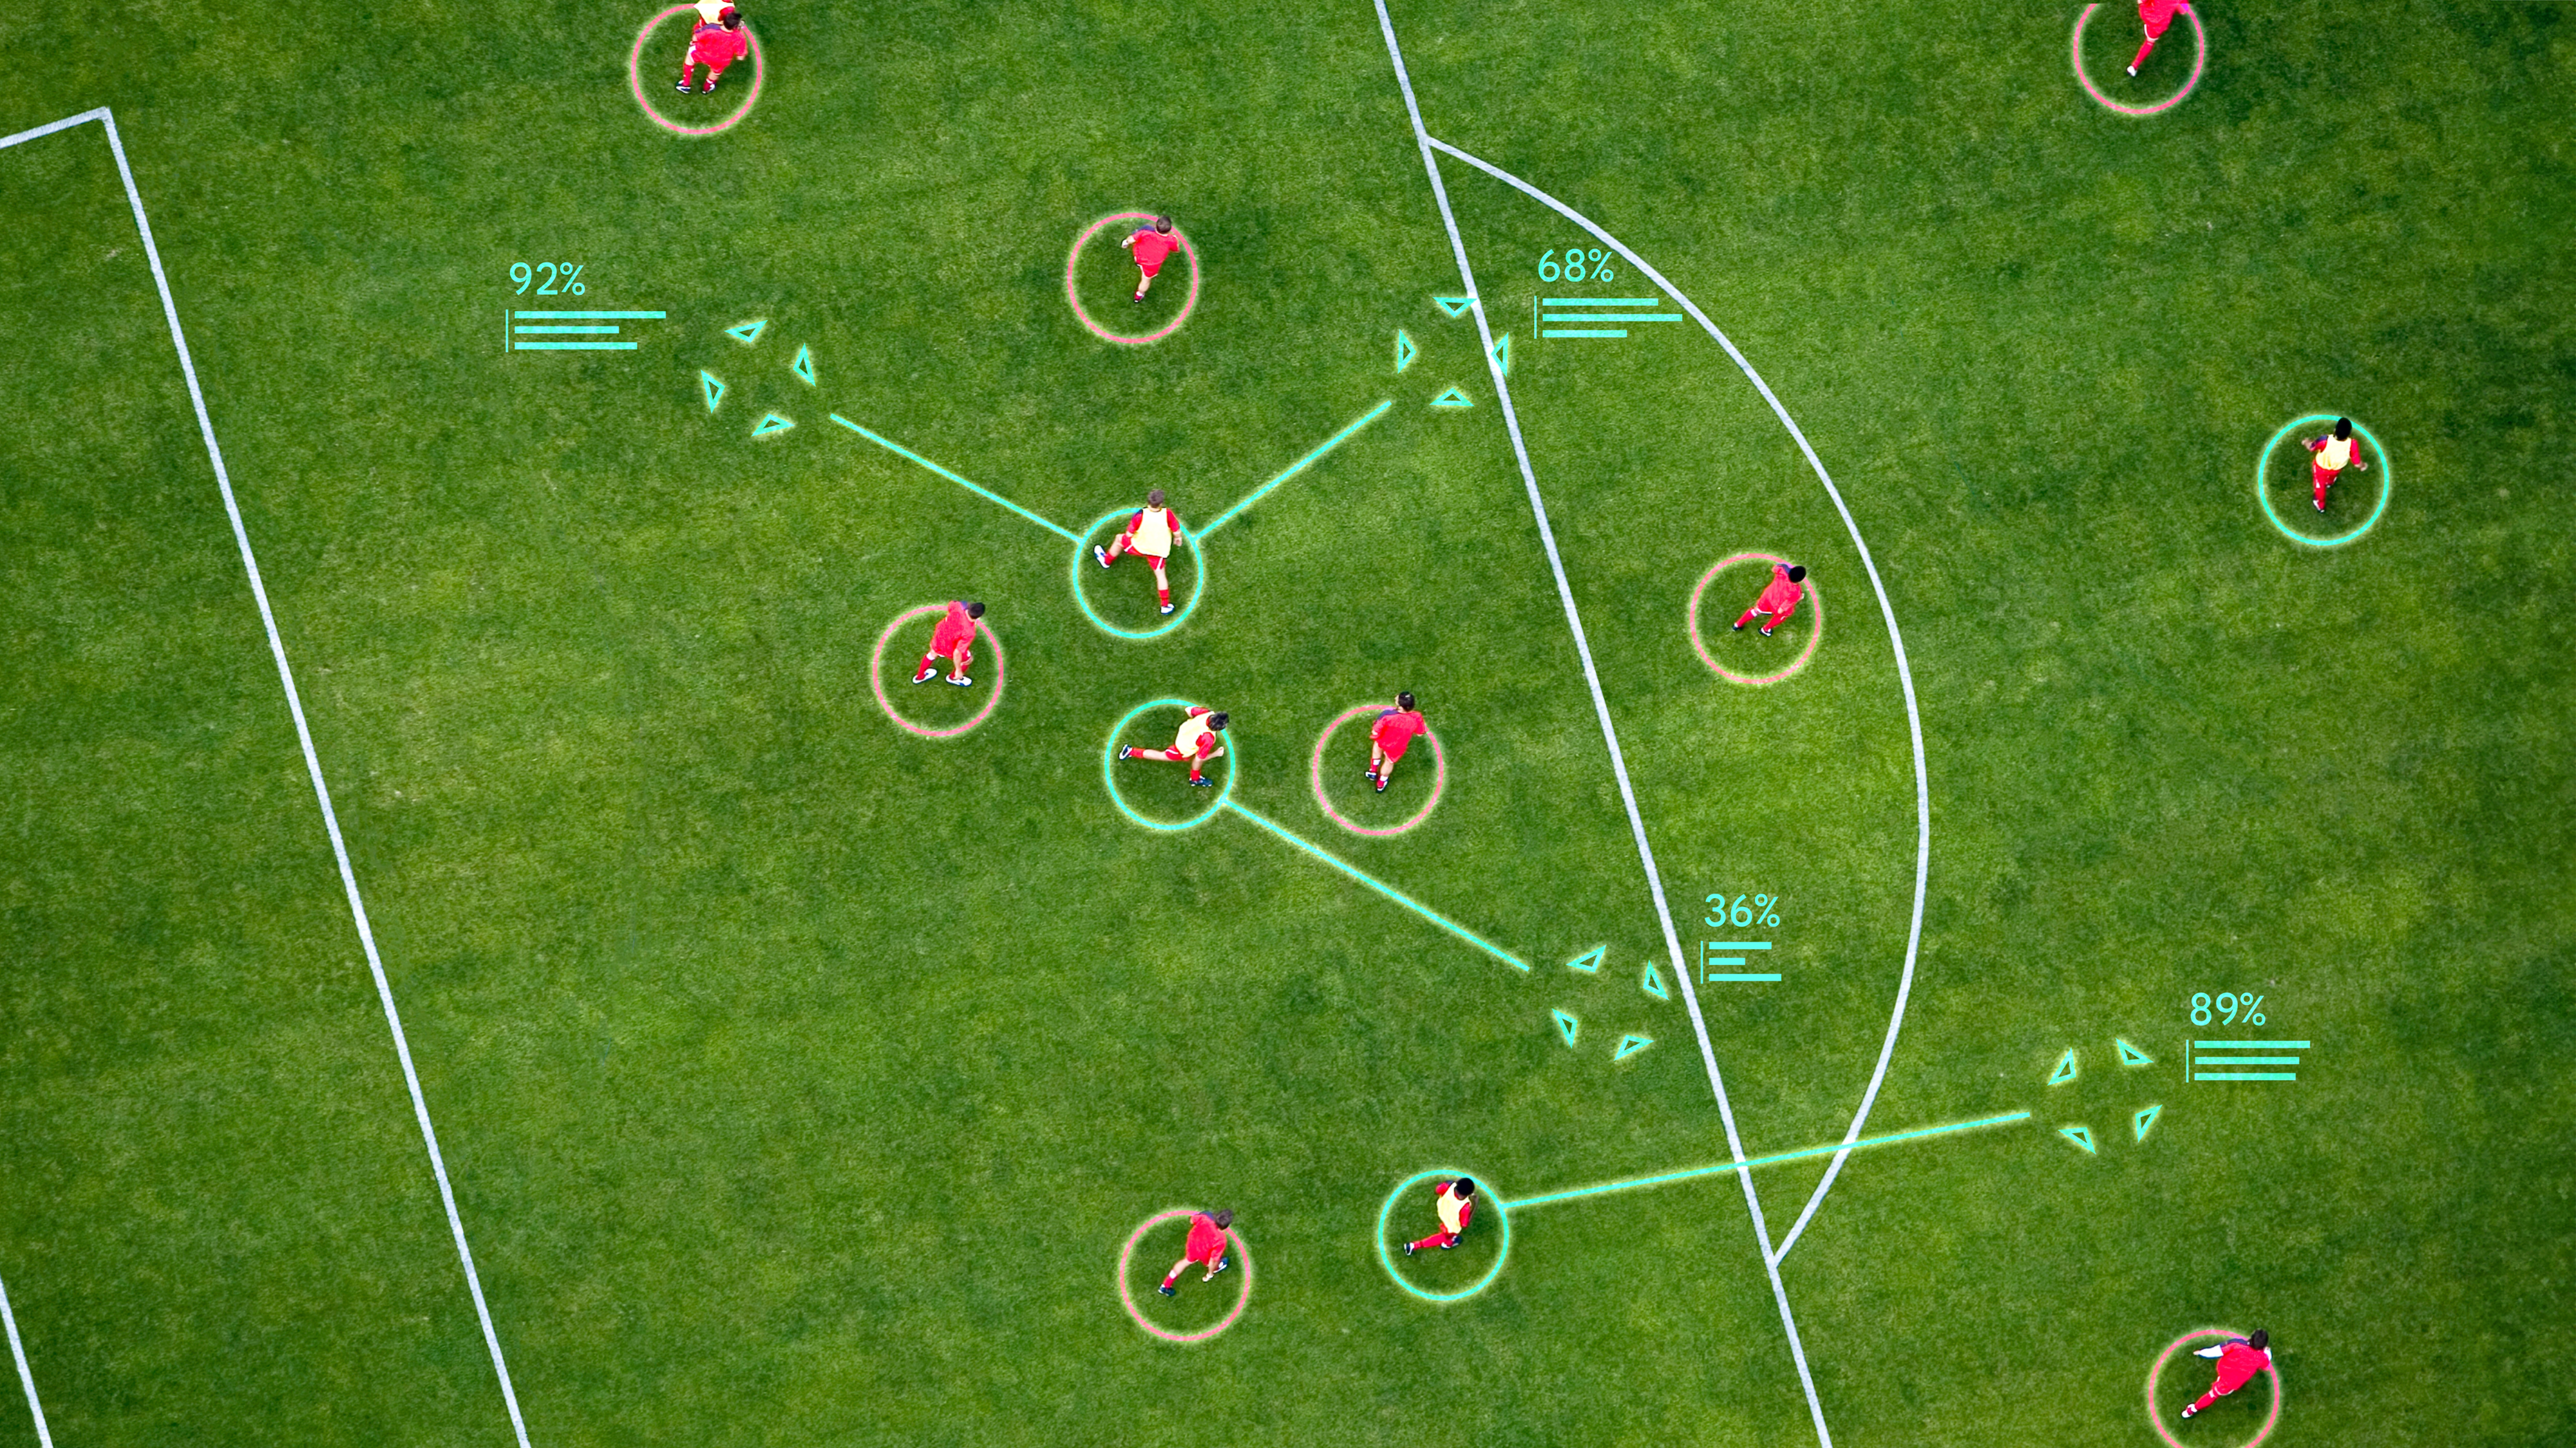 구글 딥마인드의 축구 전략 AI ‘택틱’이 축구 코너킥 상황에서 최적 상황을 계산해 제시한 시뮬레이션.  구글 딥마인드 제공